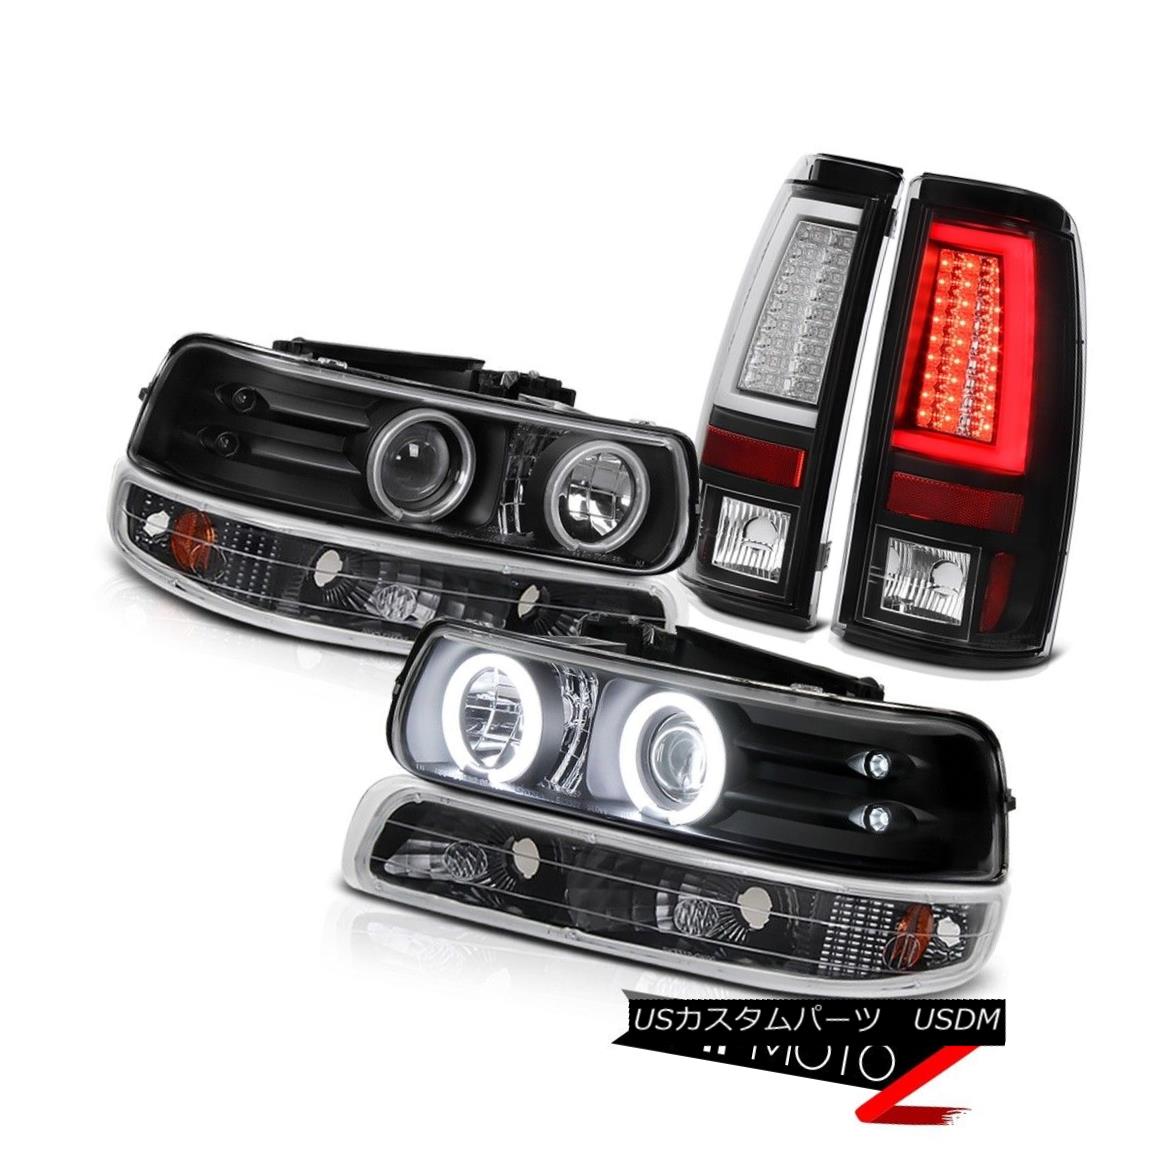 テールライト 99-02 Silverado LTZ Infinity Black Rear Brake Lamps Signal Light Headlights Cool 99-02 Silverado LTZ Infinityブラックリアブレーキランプシグナルライトヘッドライトクール